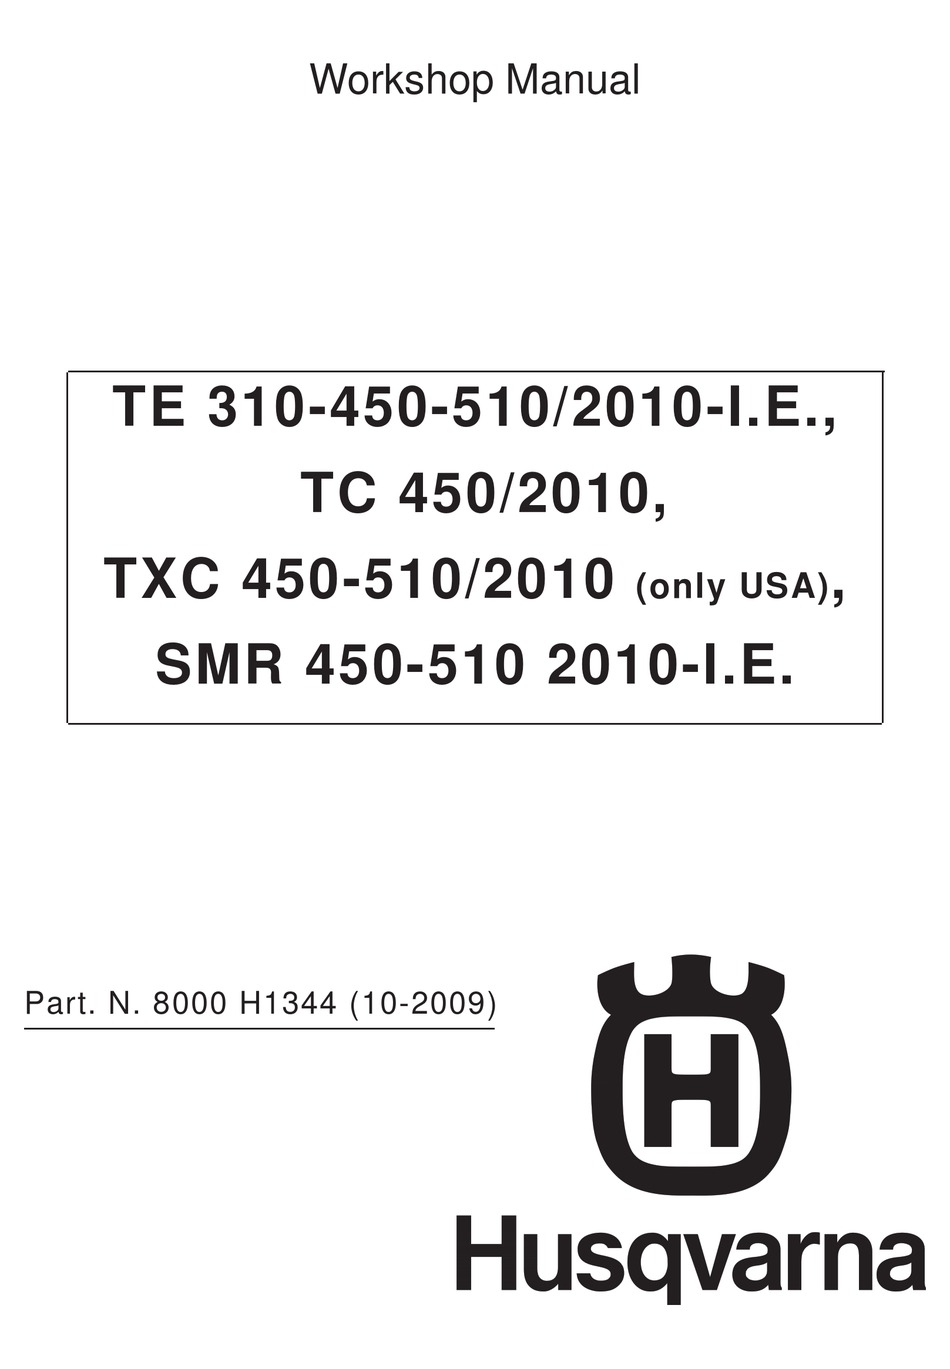 HUSQVARNA TC 450 WORKSHOP MANUAL Pdf Download | ManualsLib